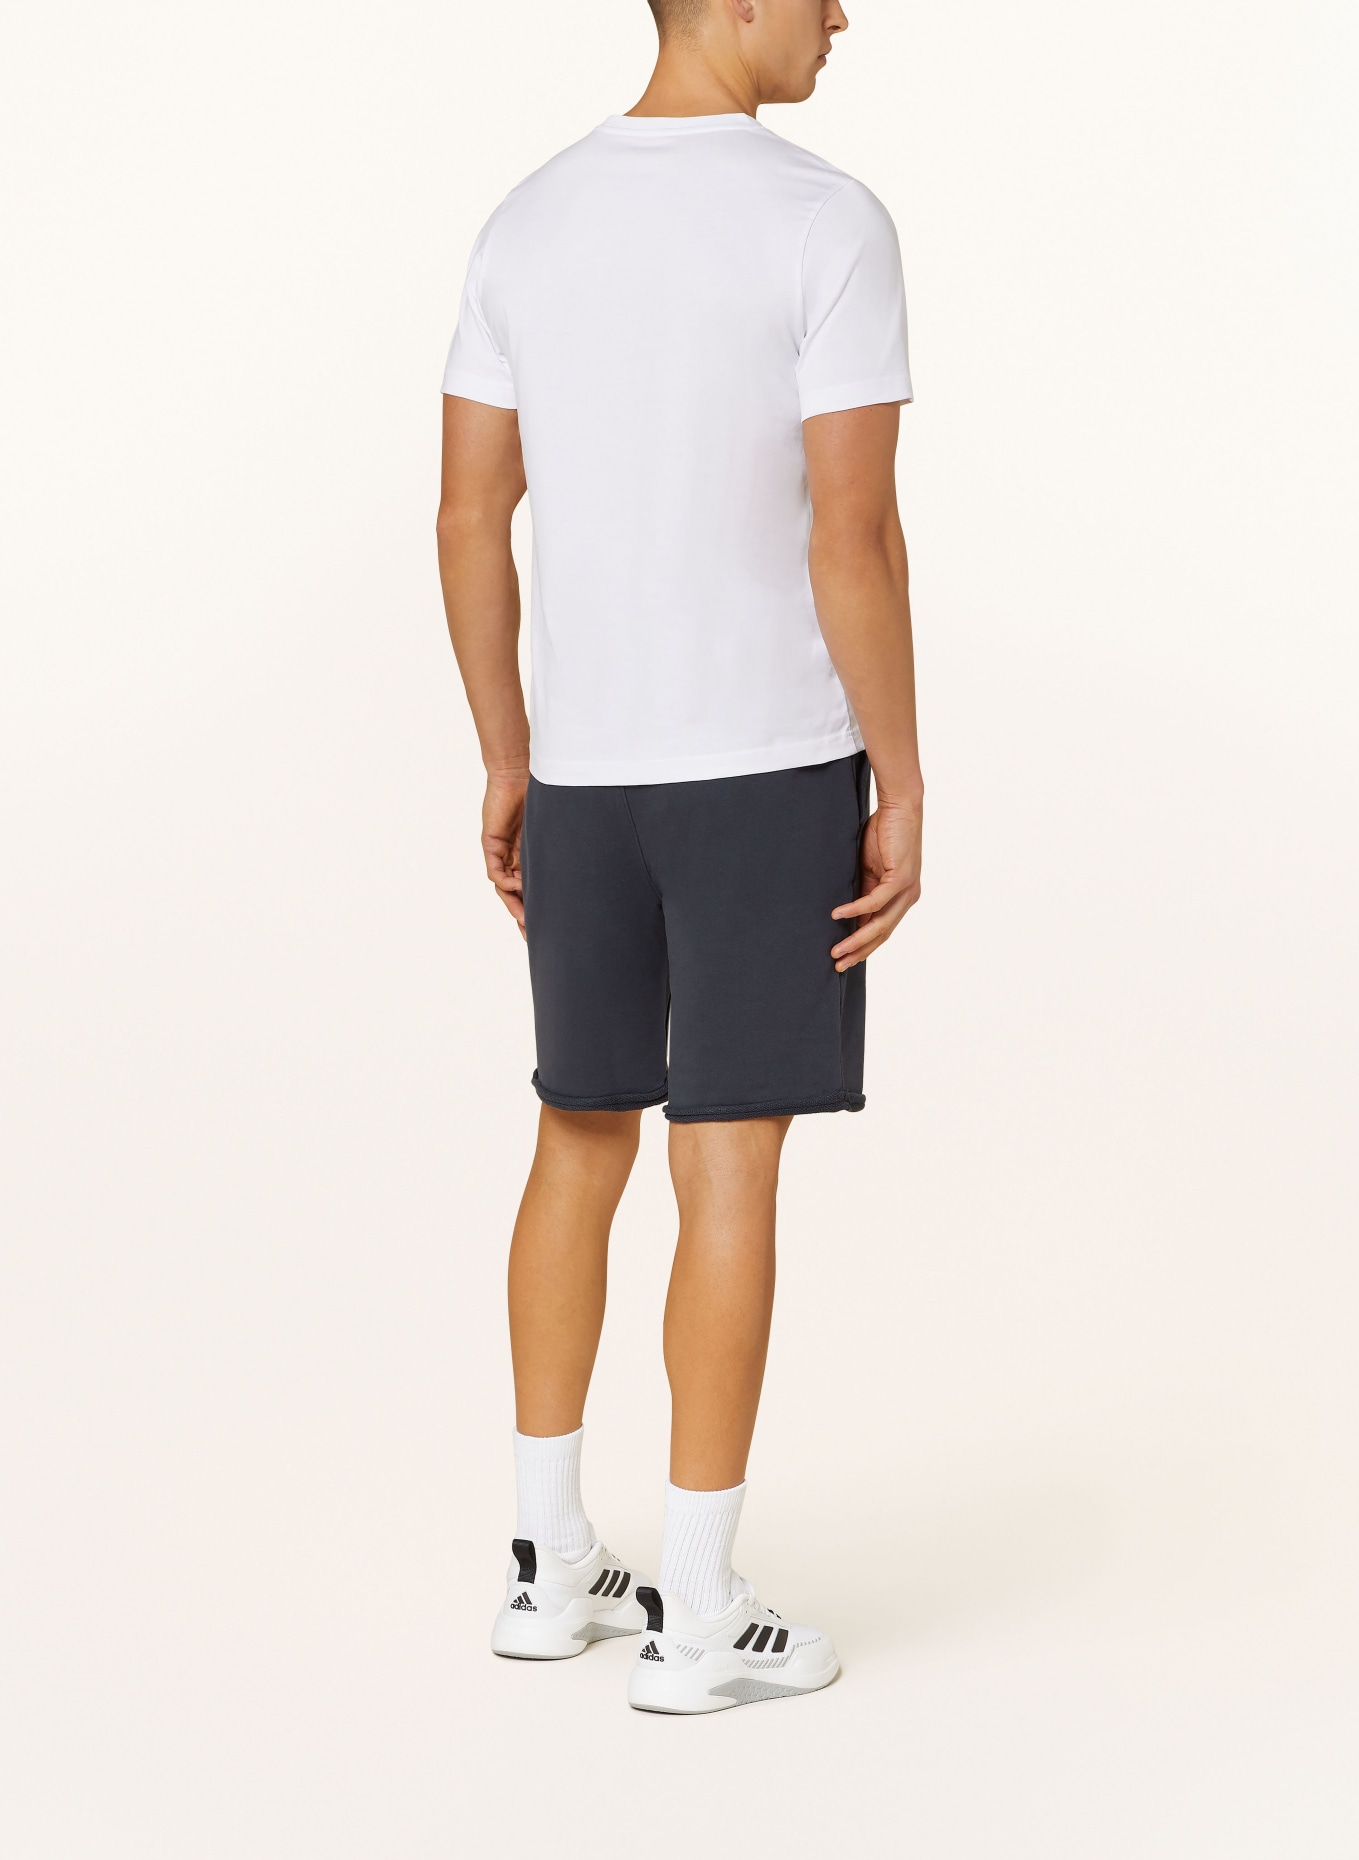 JOY sportswear Sweat shorts, Color: DARK BLUE (Image 3)